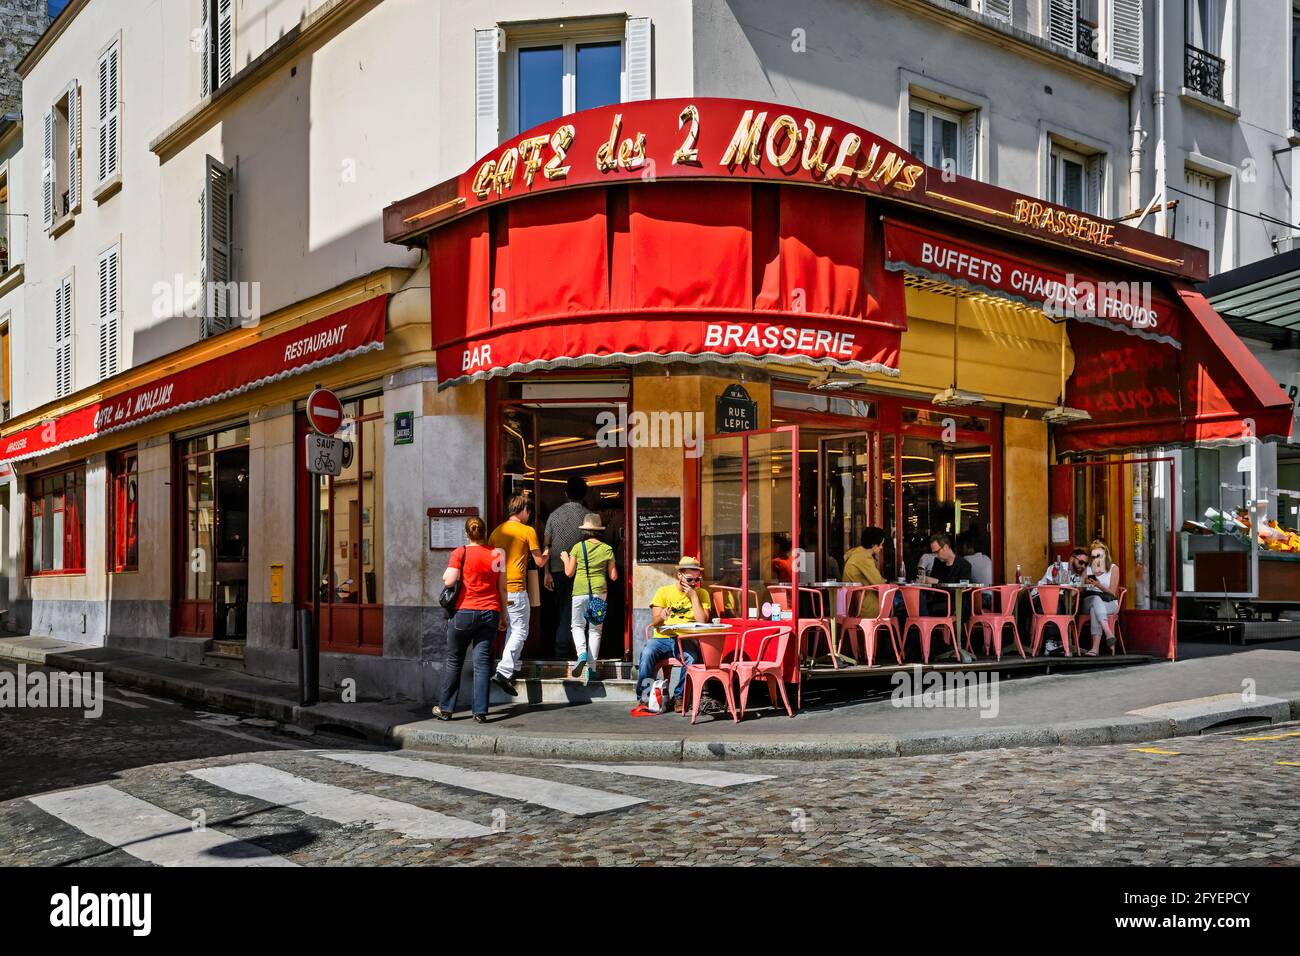 FRANCE. PARIS (75) 'CAFE DES 2 MOULINS' À MONTMARTRE. IL A ÉTÉ UTILISÉ DANS LE FILM 'AMÉLIE POULAIN' Banque D'Images